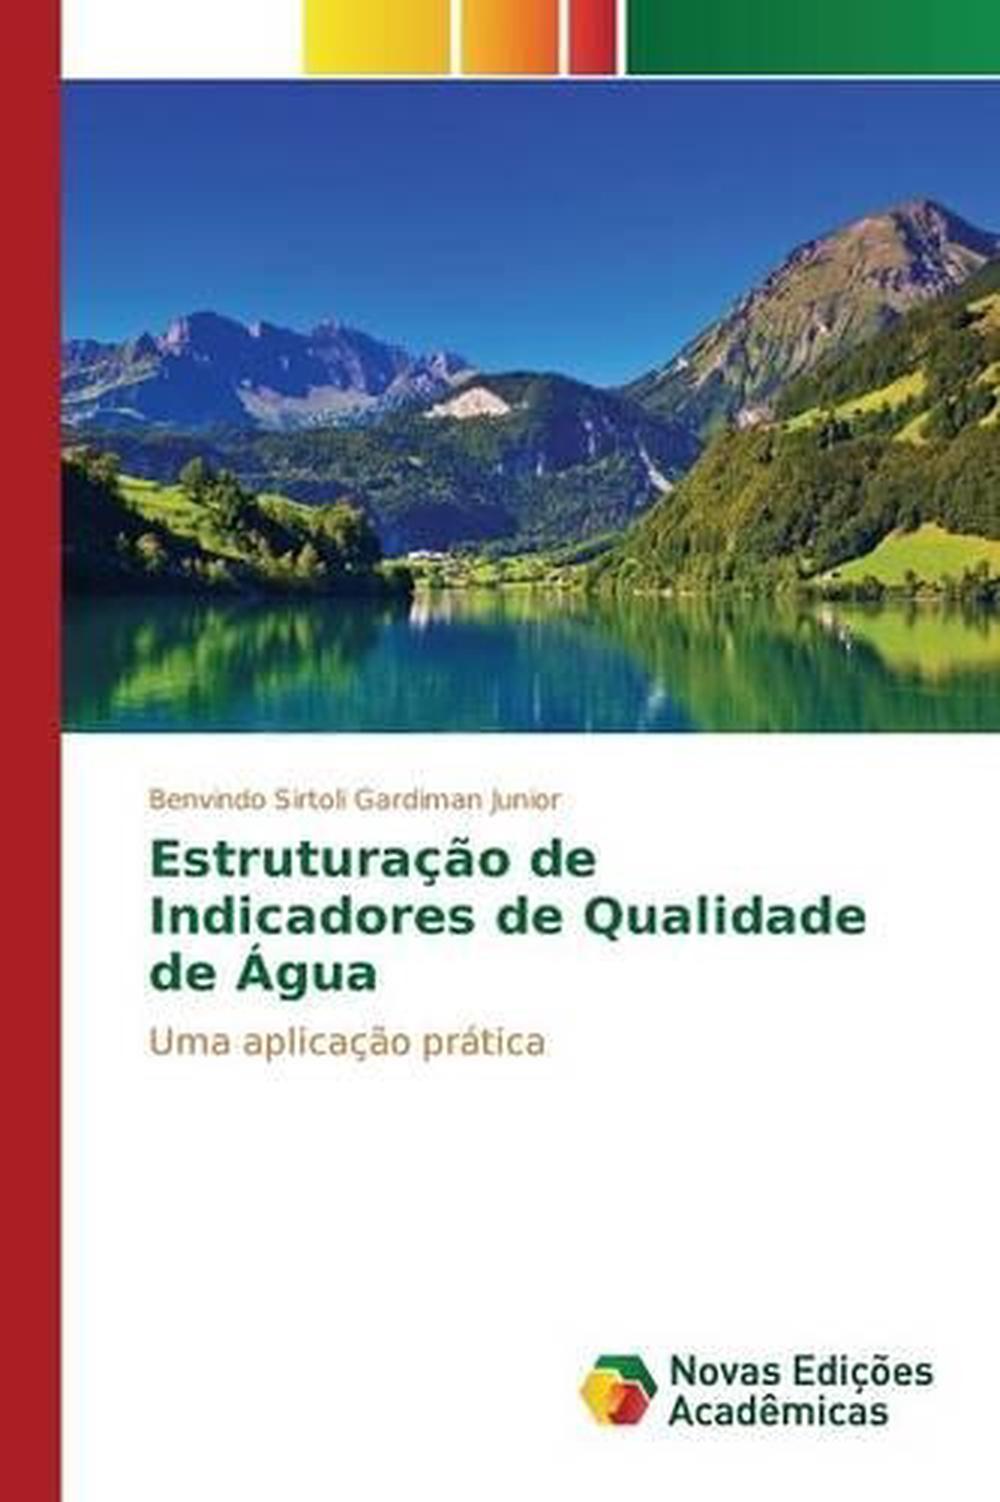 Estruturacao de Indicadores de Qualidade de Agua by Gardiman Junior ...